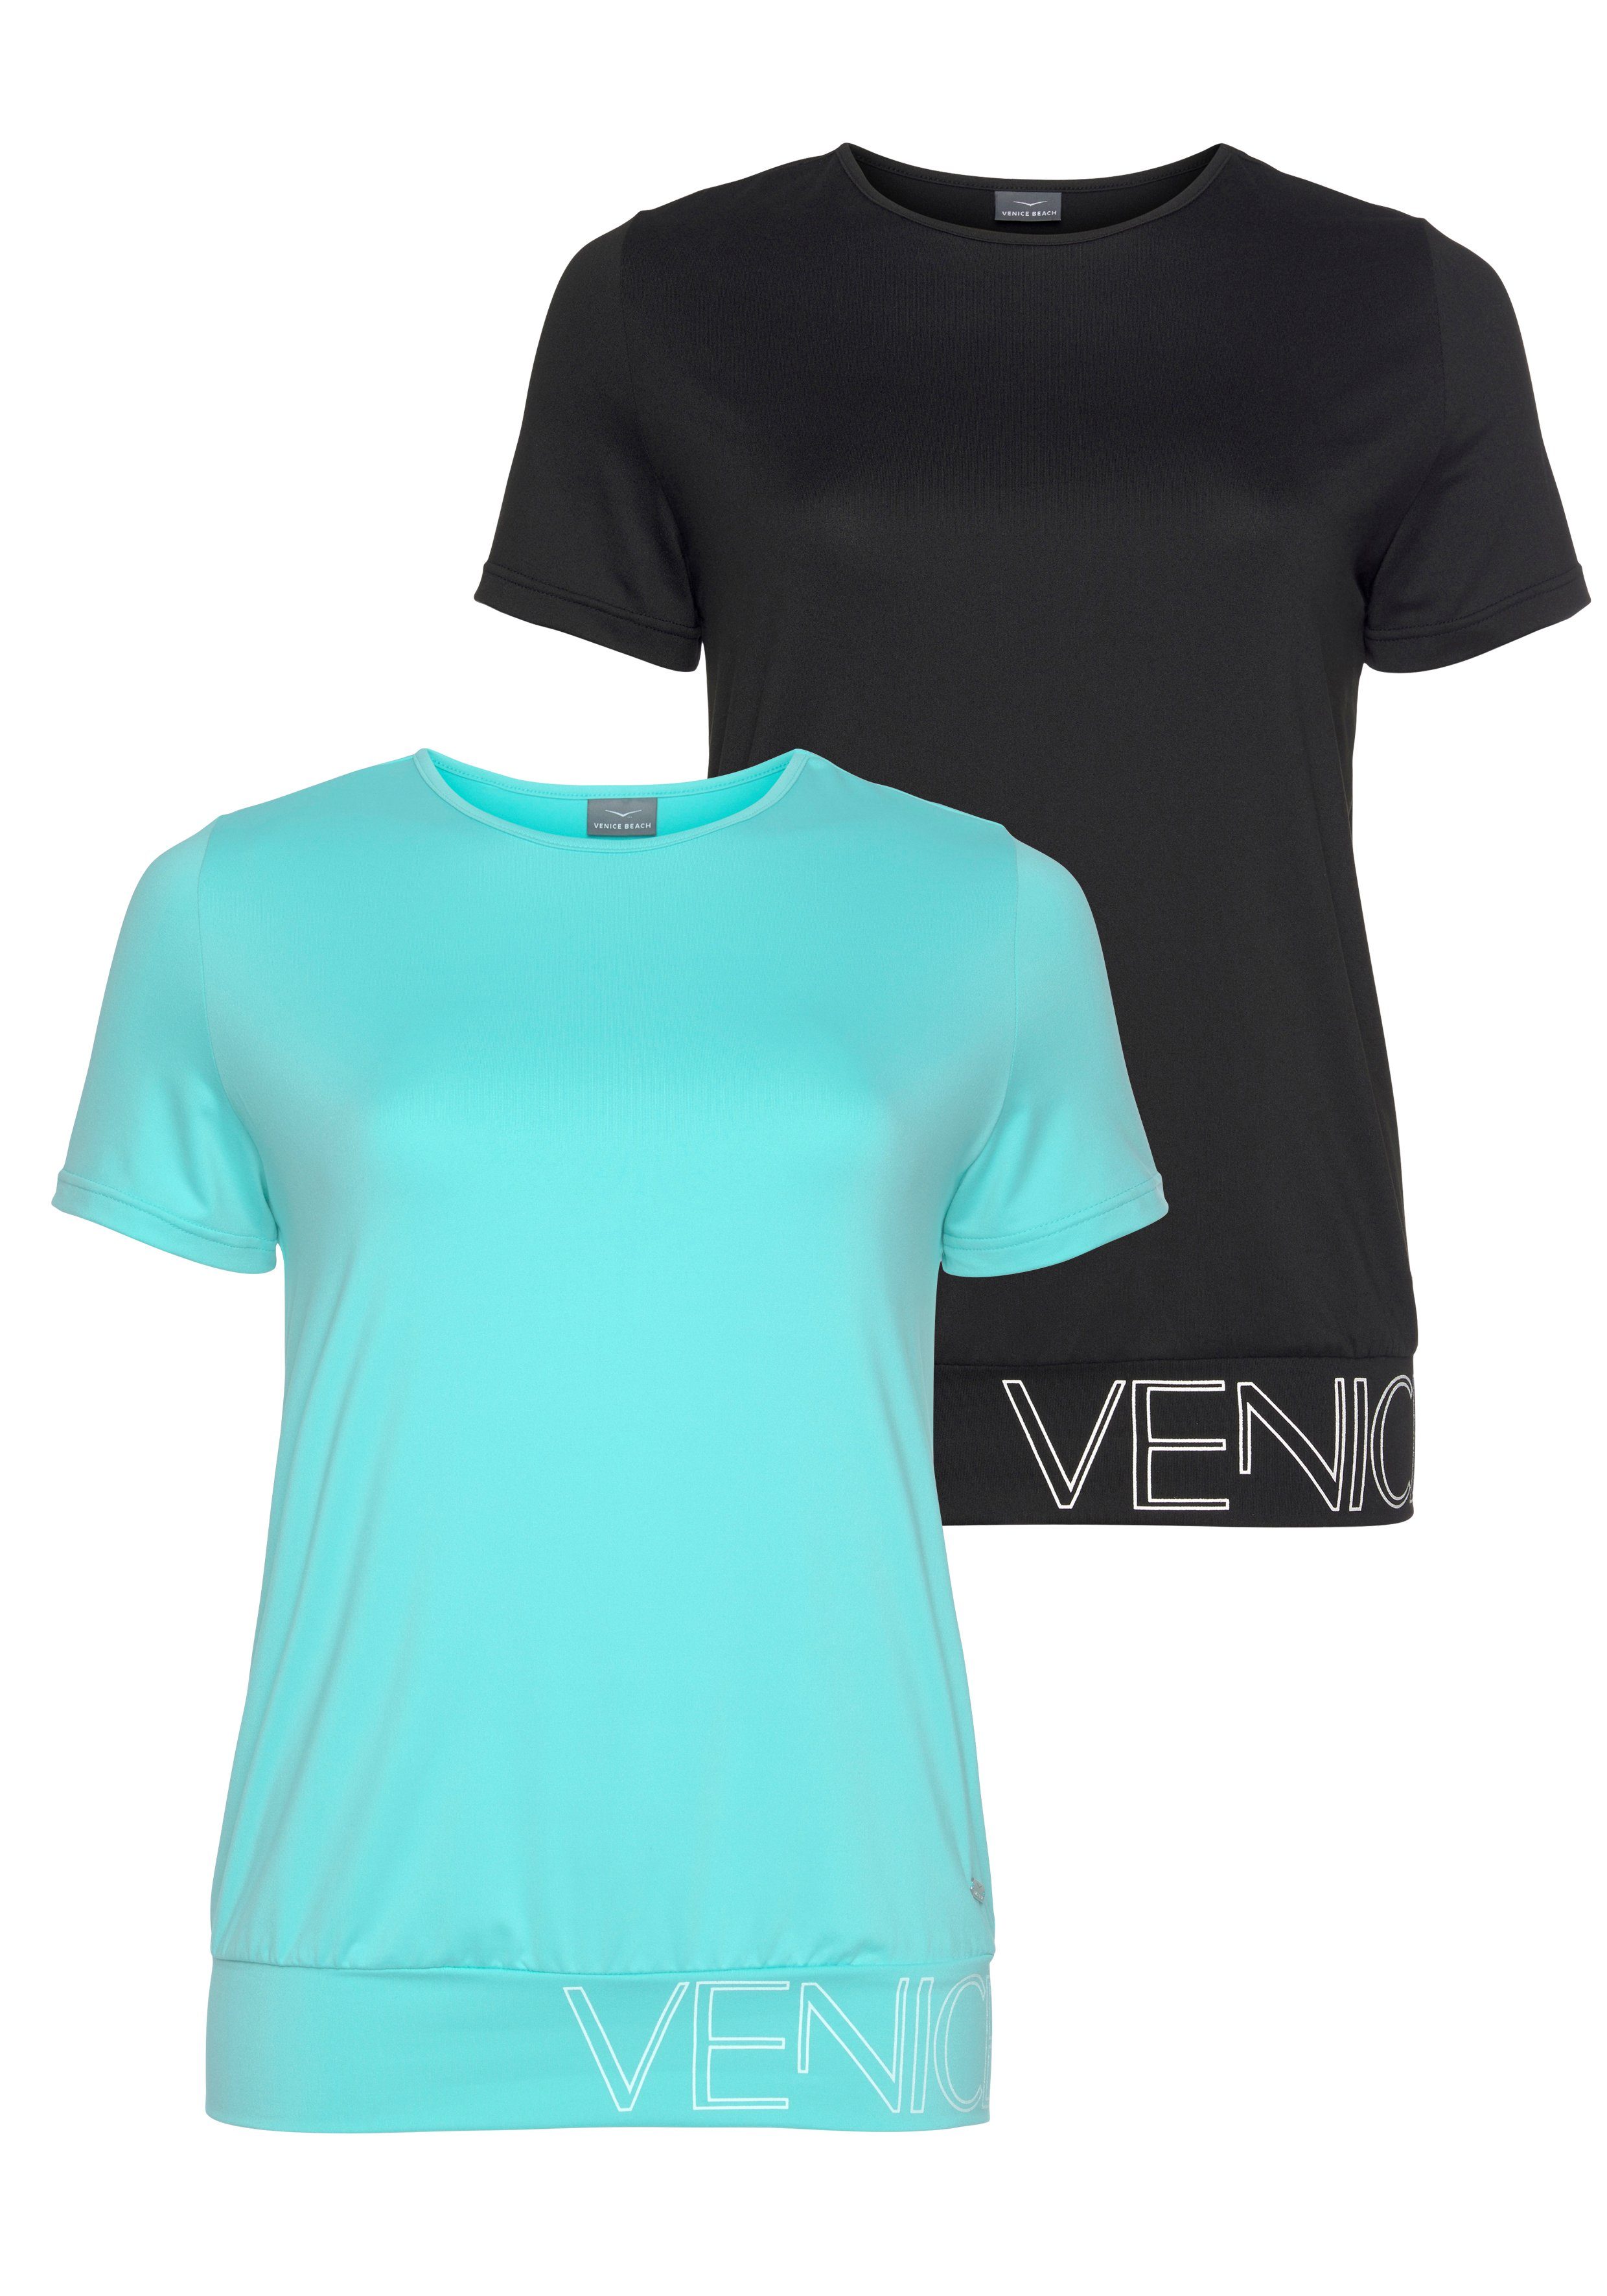 Venice Beach Funktionsshirts online kaufen | OTTO